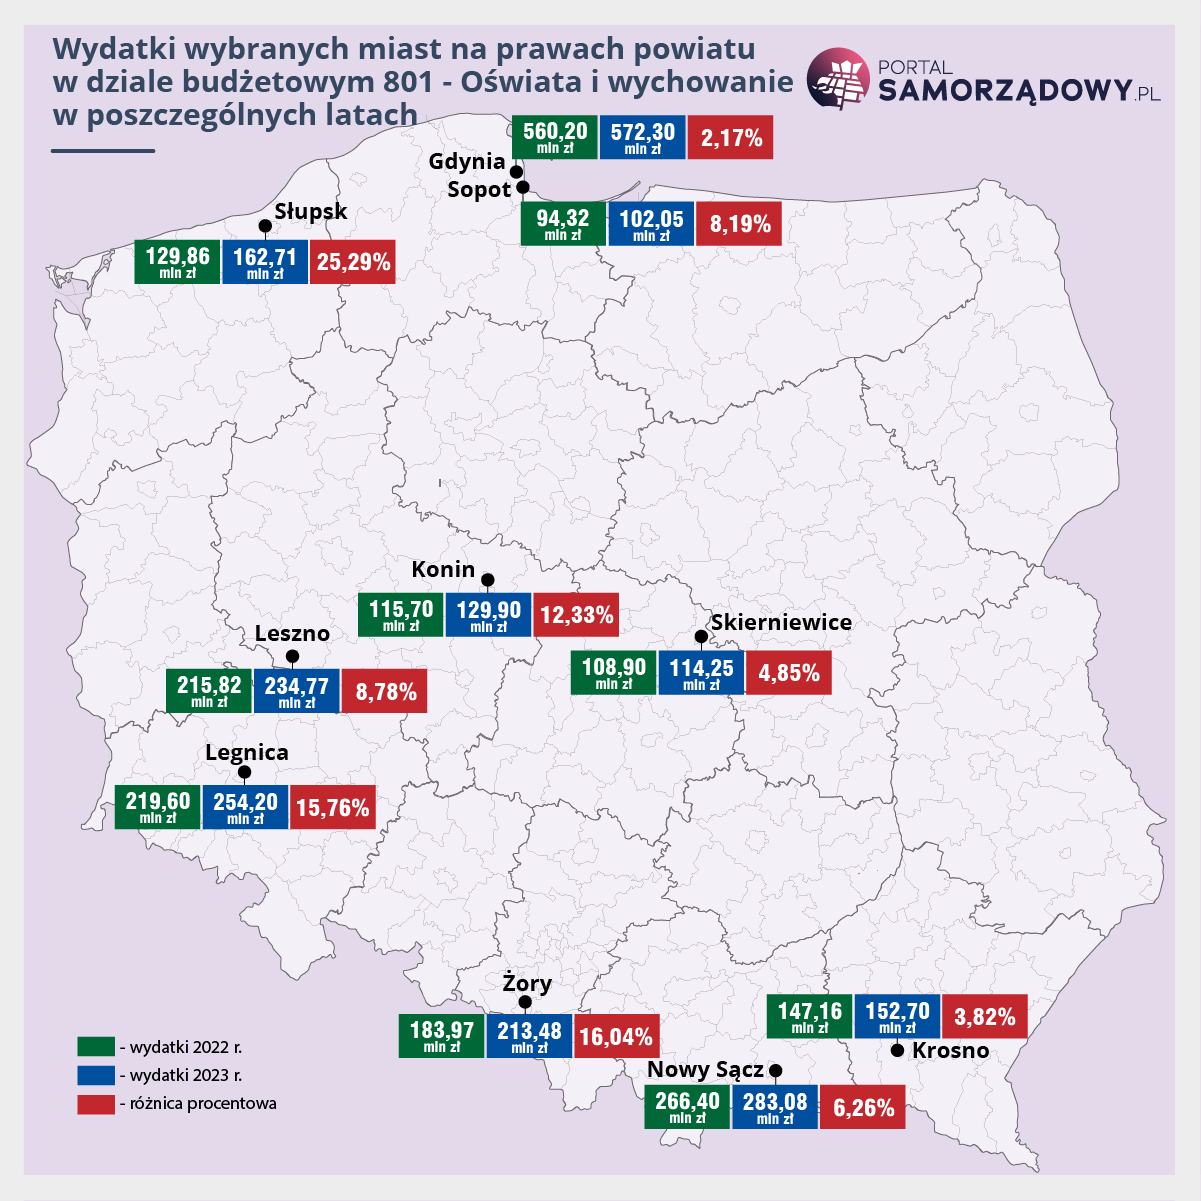 Oprac. PortalSamorzadowy.pl na podstawie projektów uchwał budżetowych